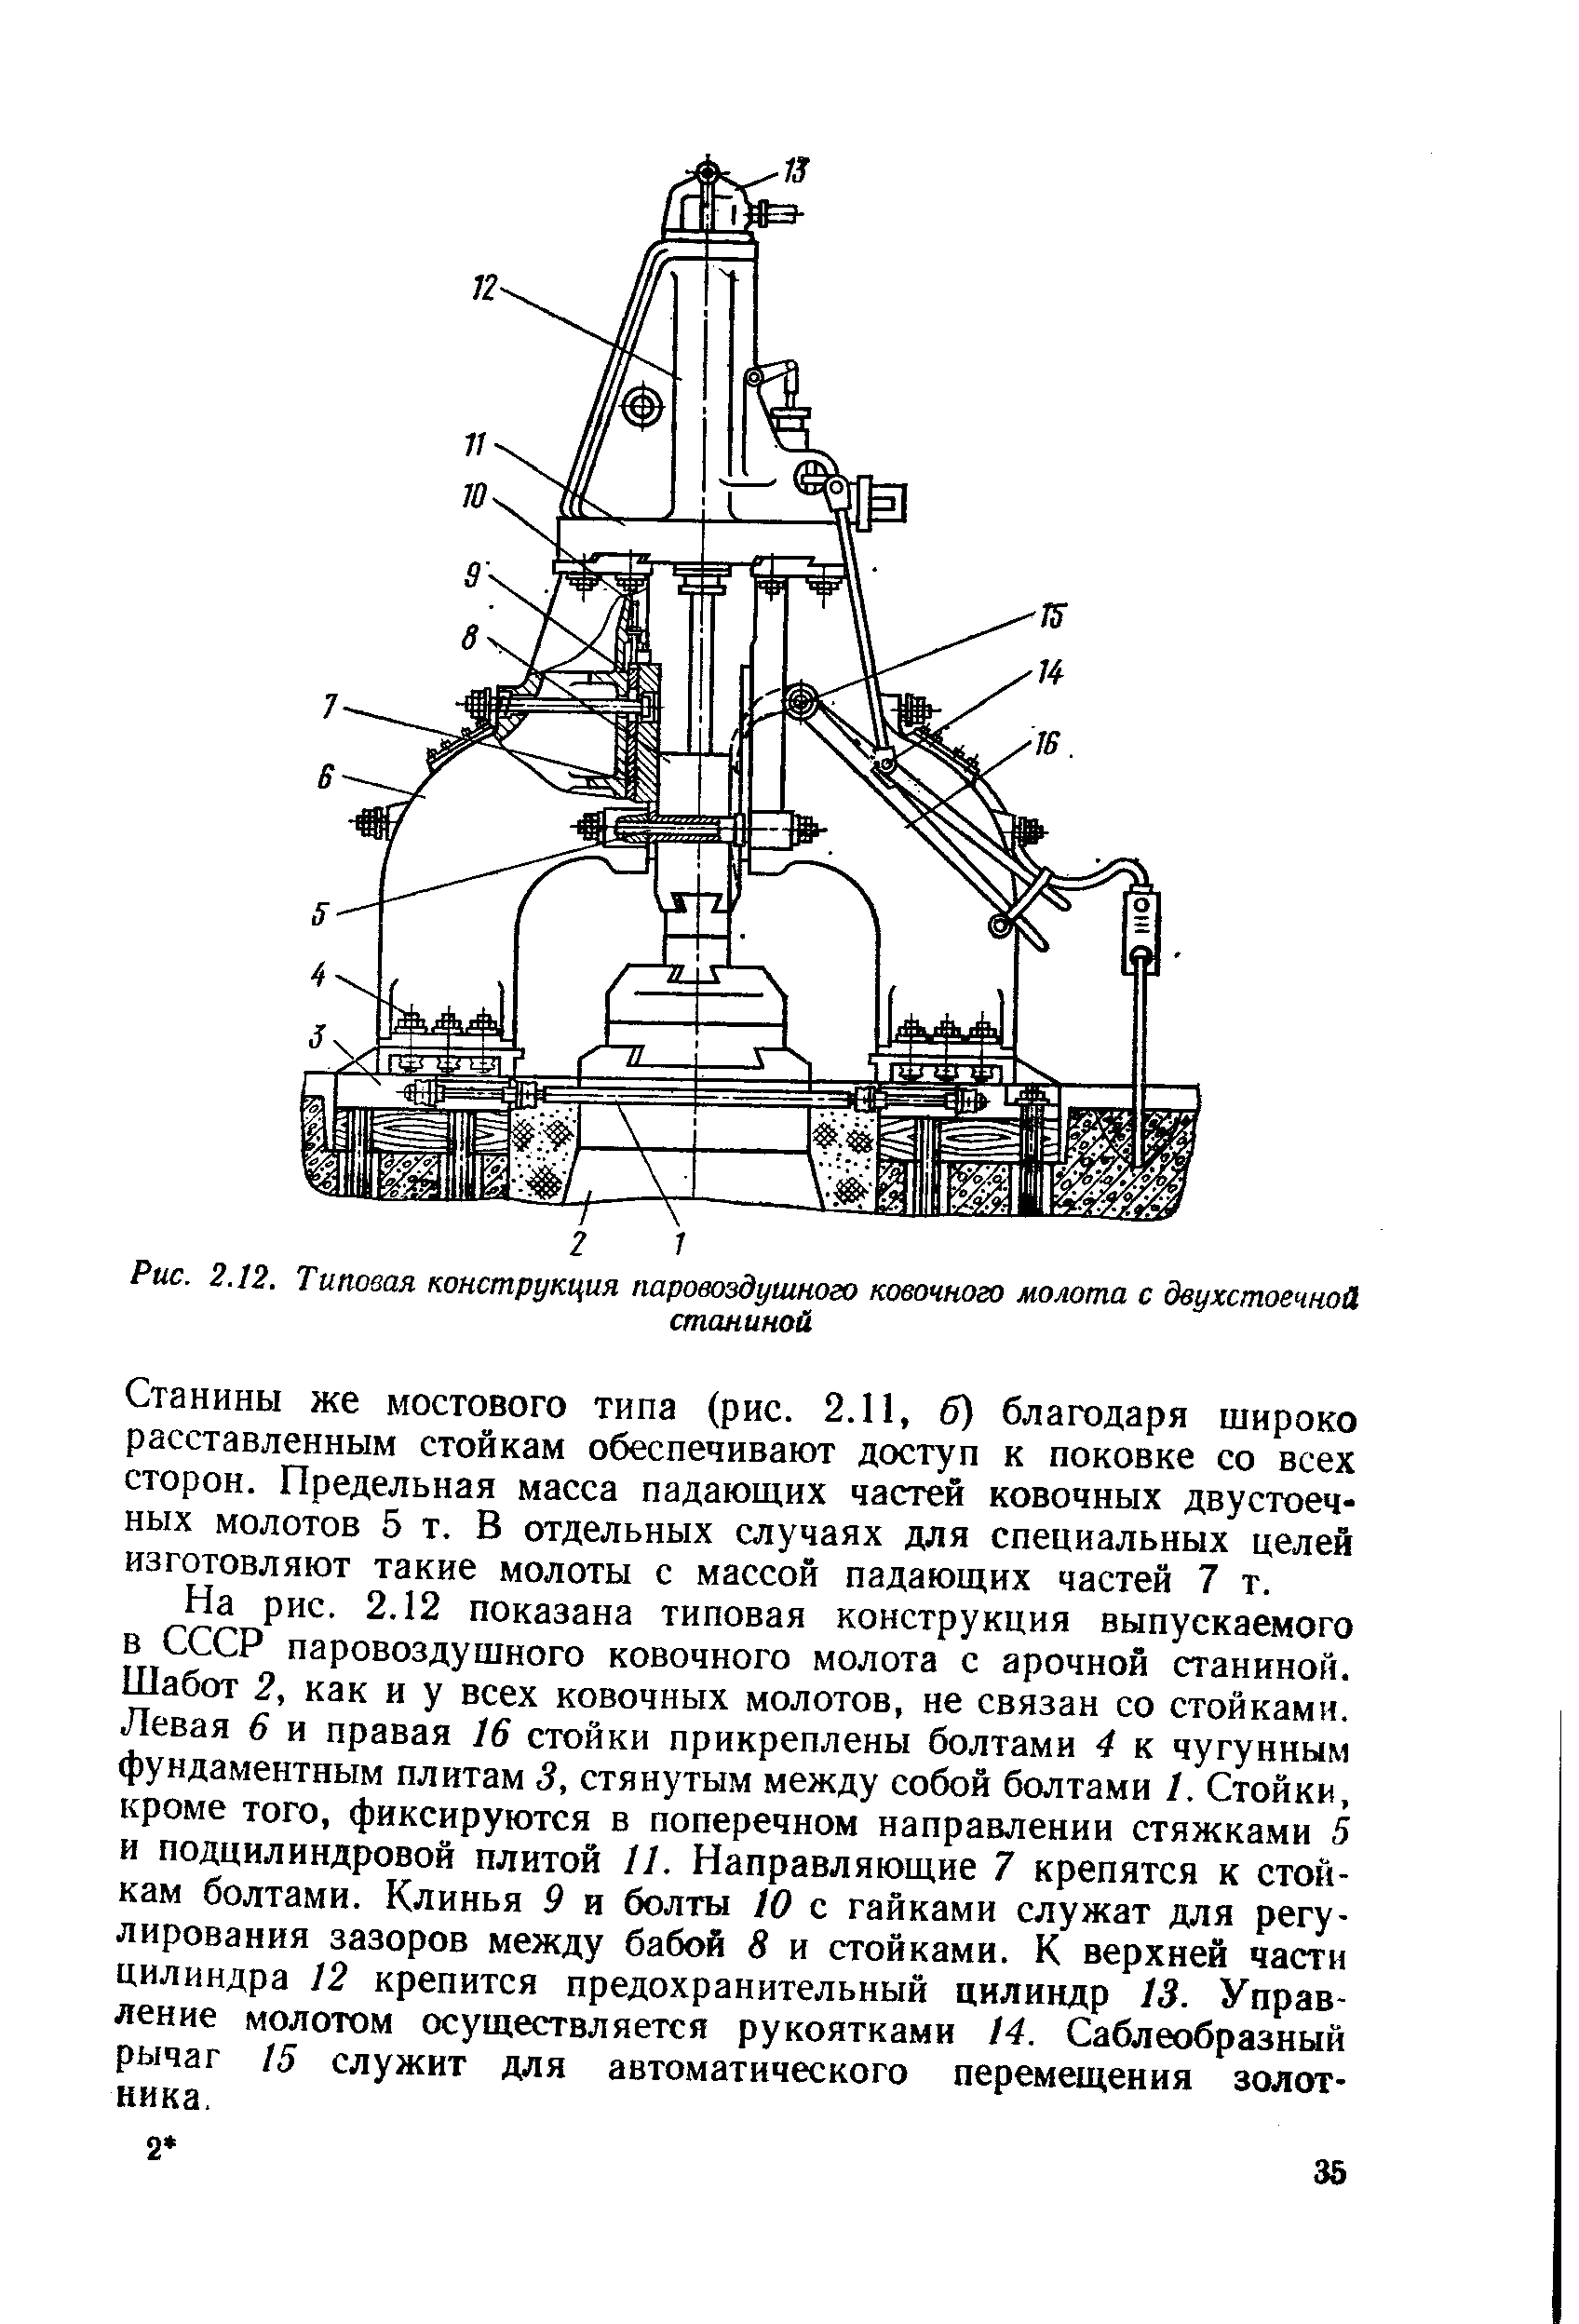 Кинематическая схема паровоздушного молота арочного типа